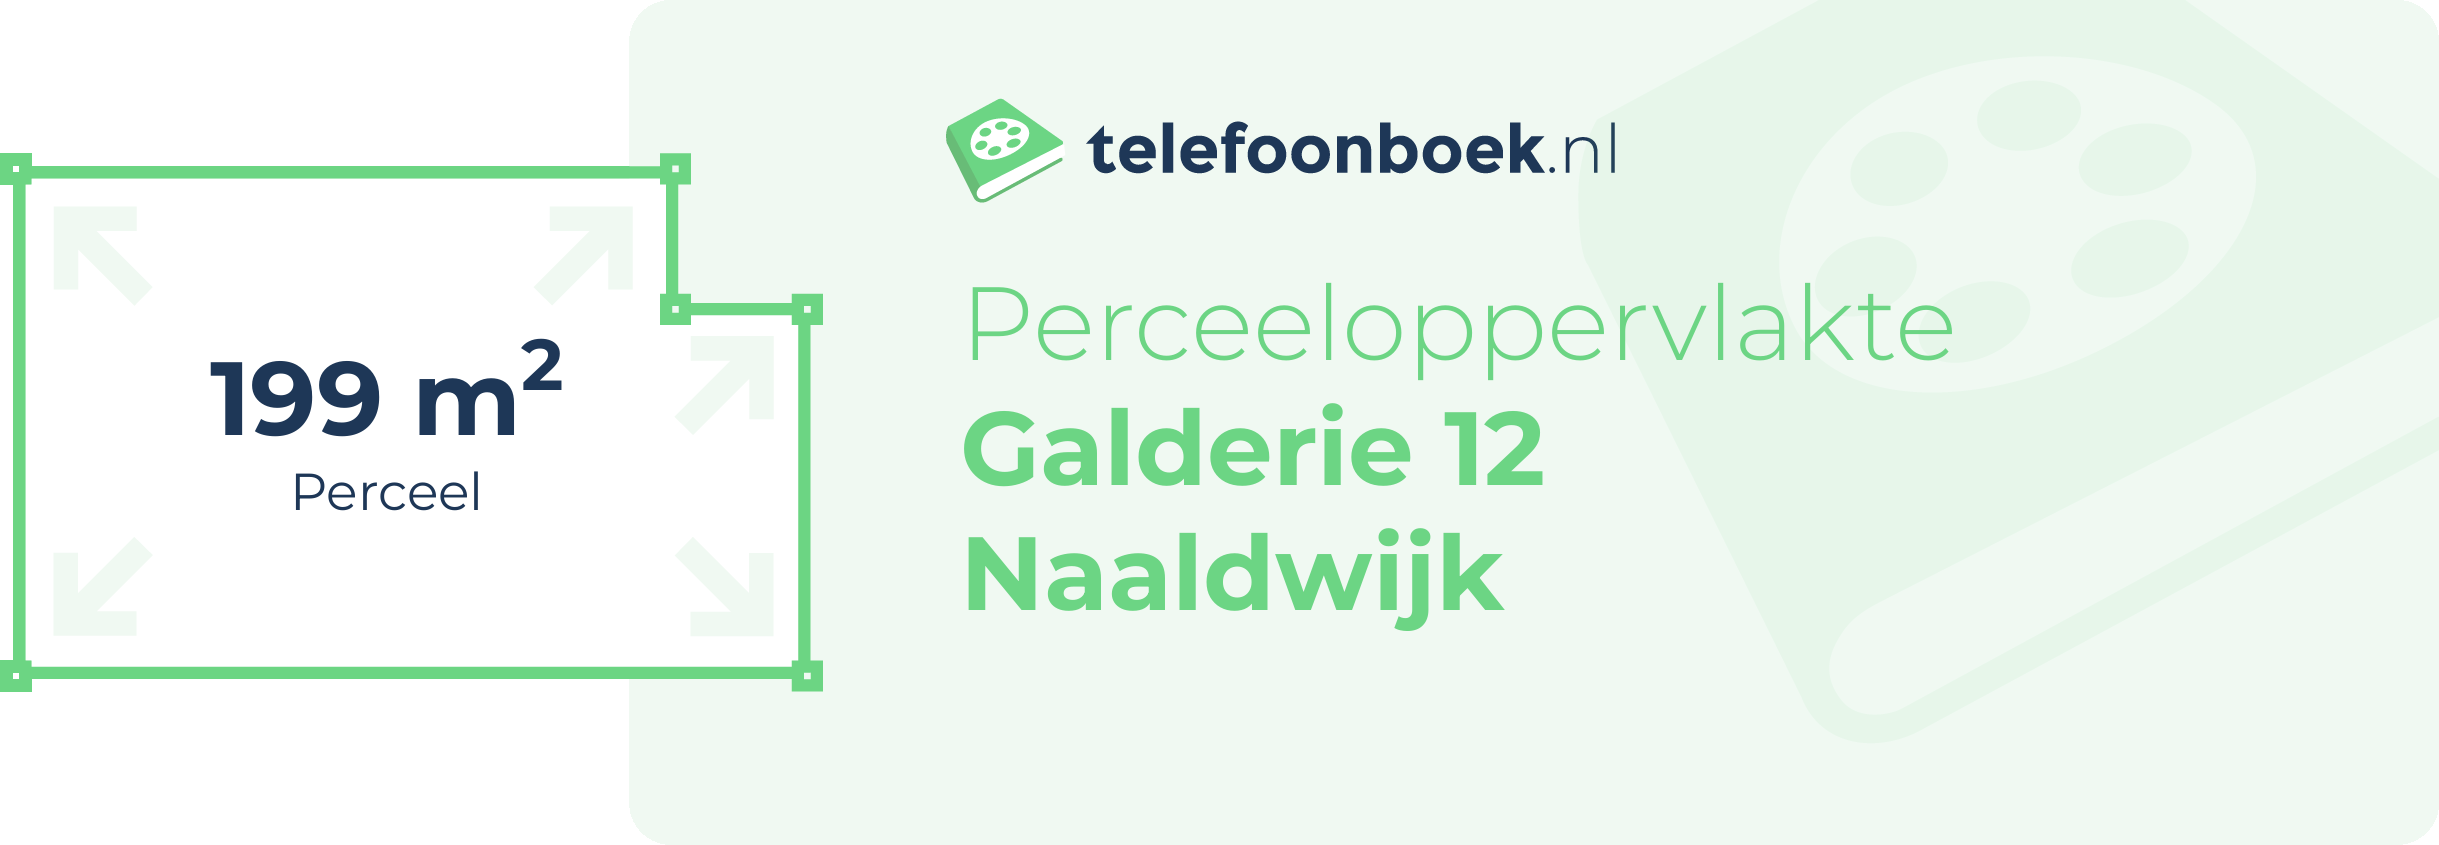 Perceeloppervlakte Galderie 12 Naaldwijk